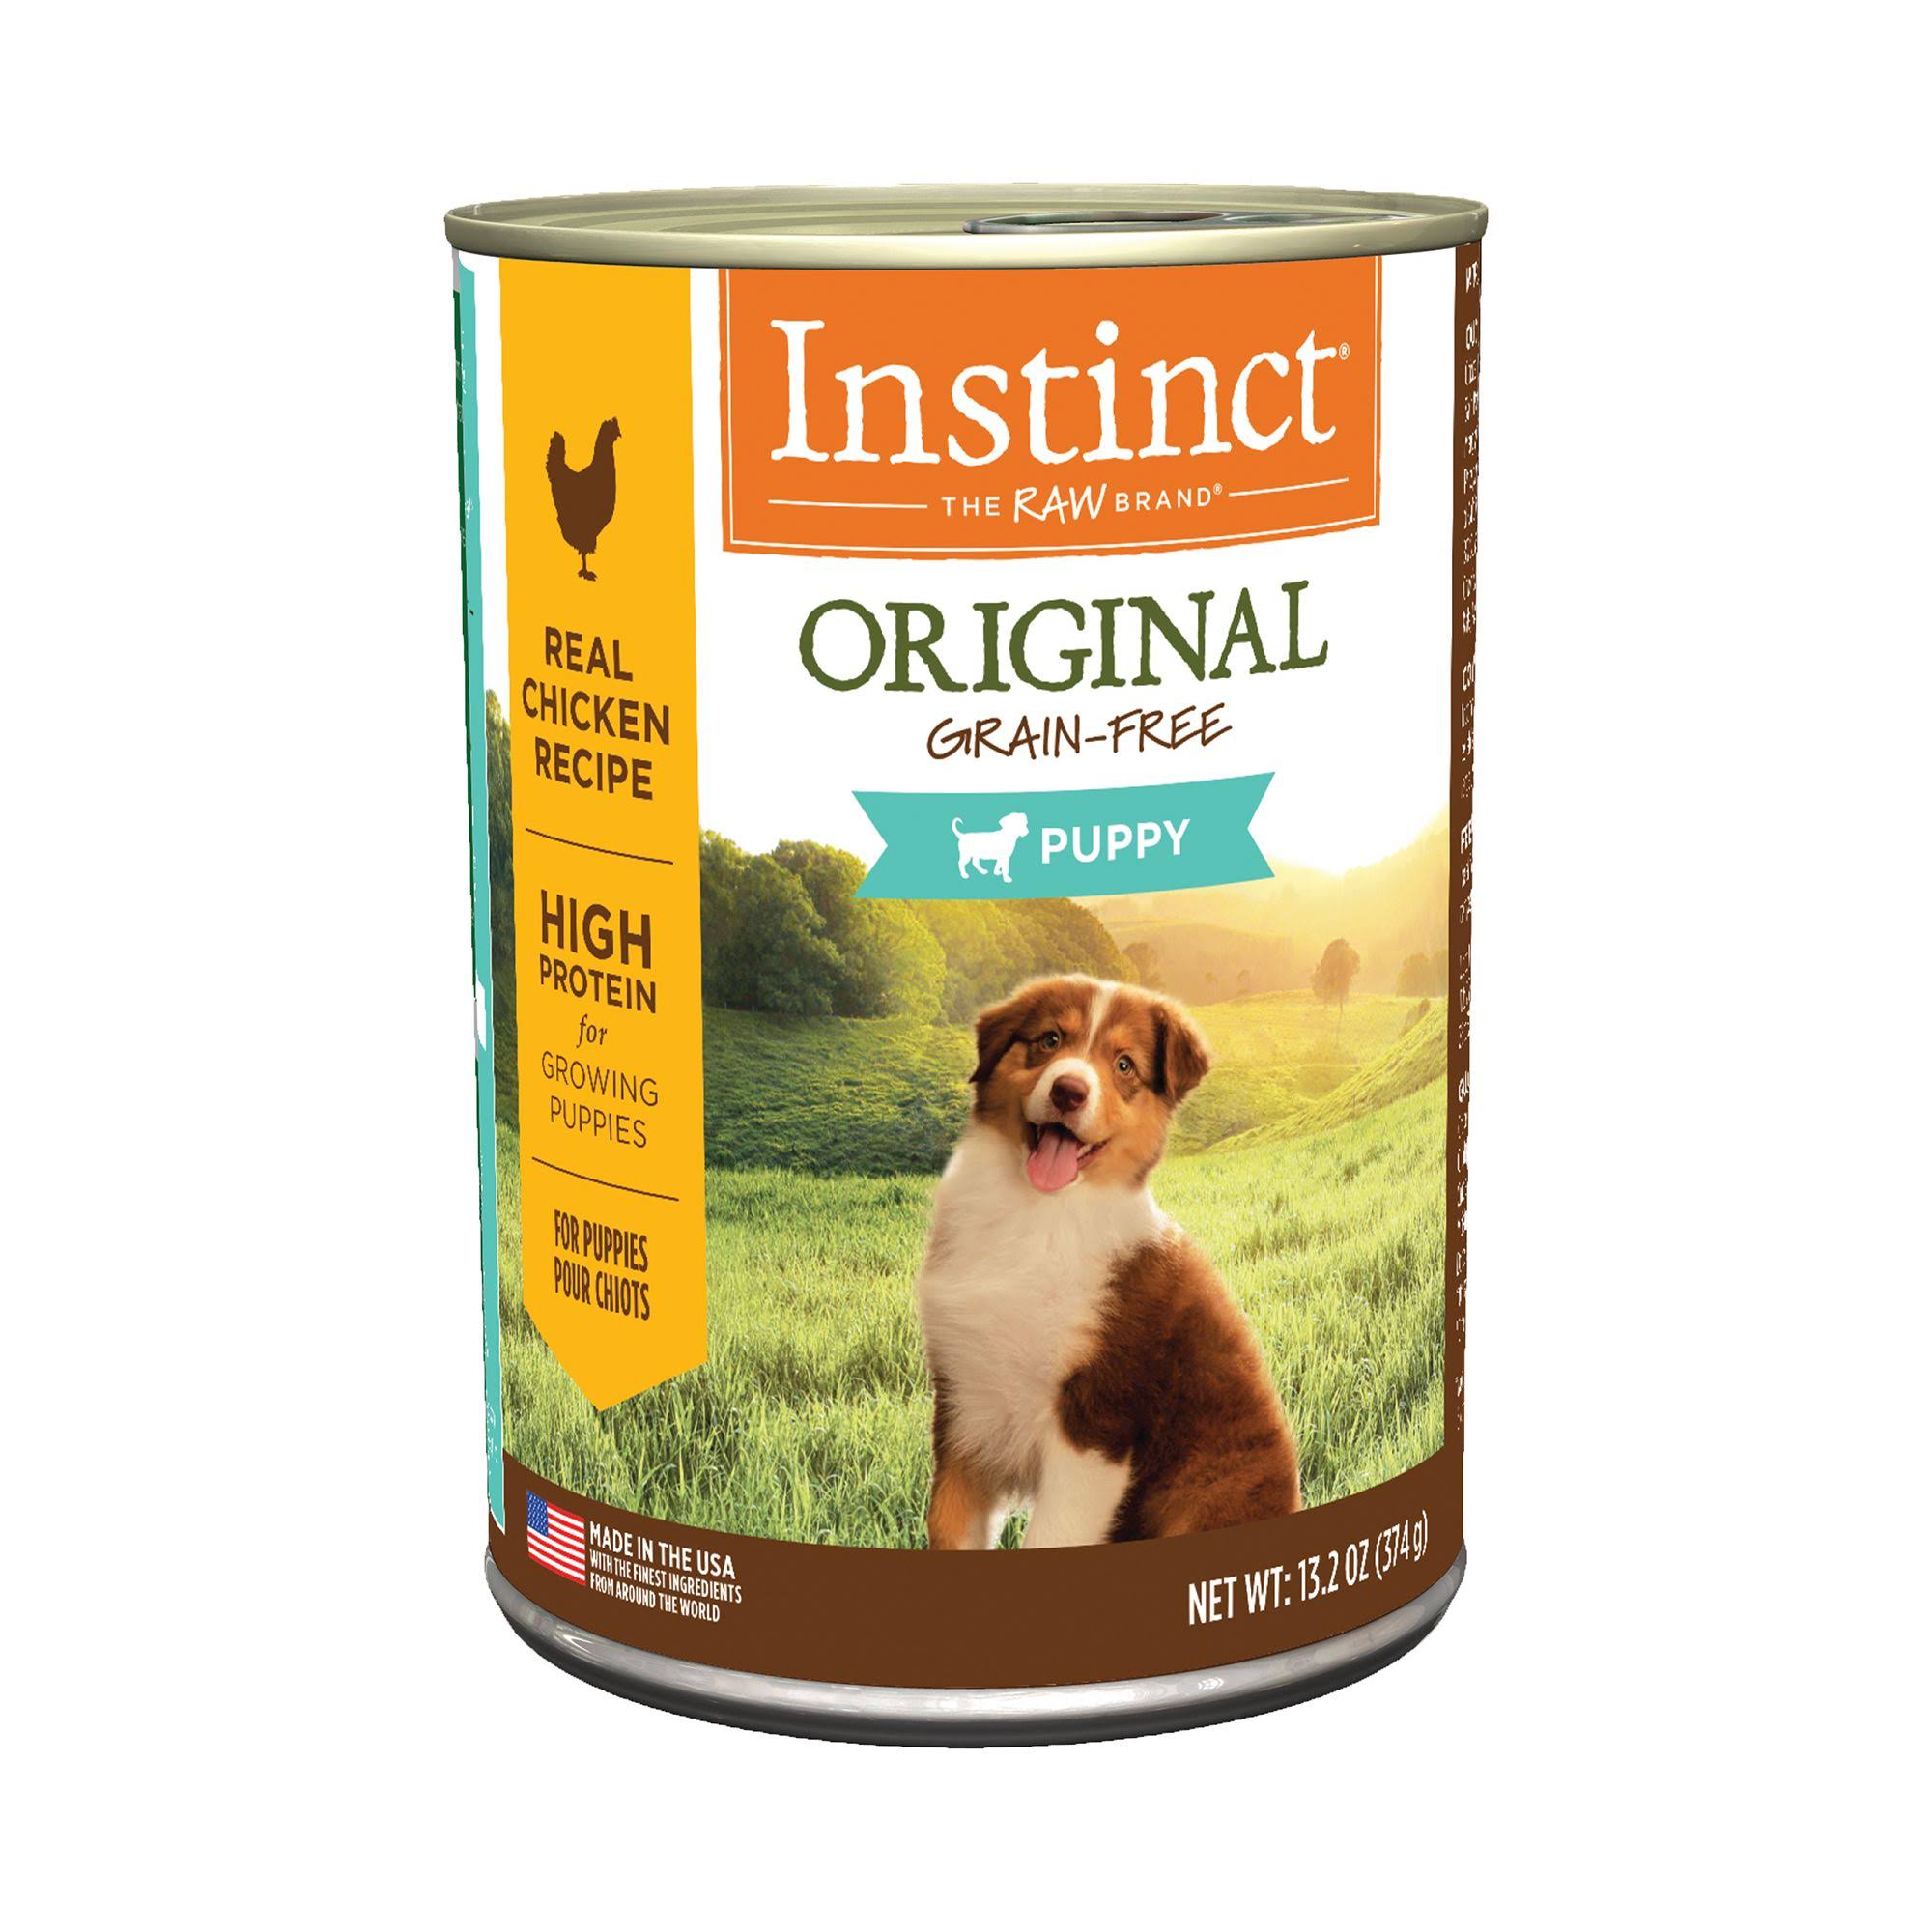 Instinct Original Grain-Free Puppy Food - Real Chicken Recipe, 374g